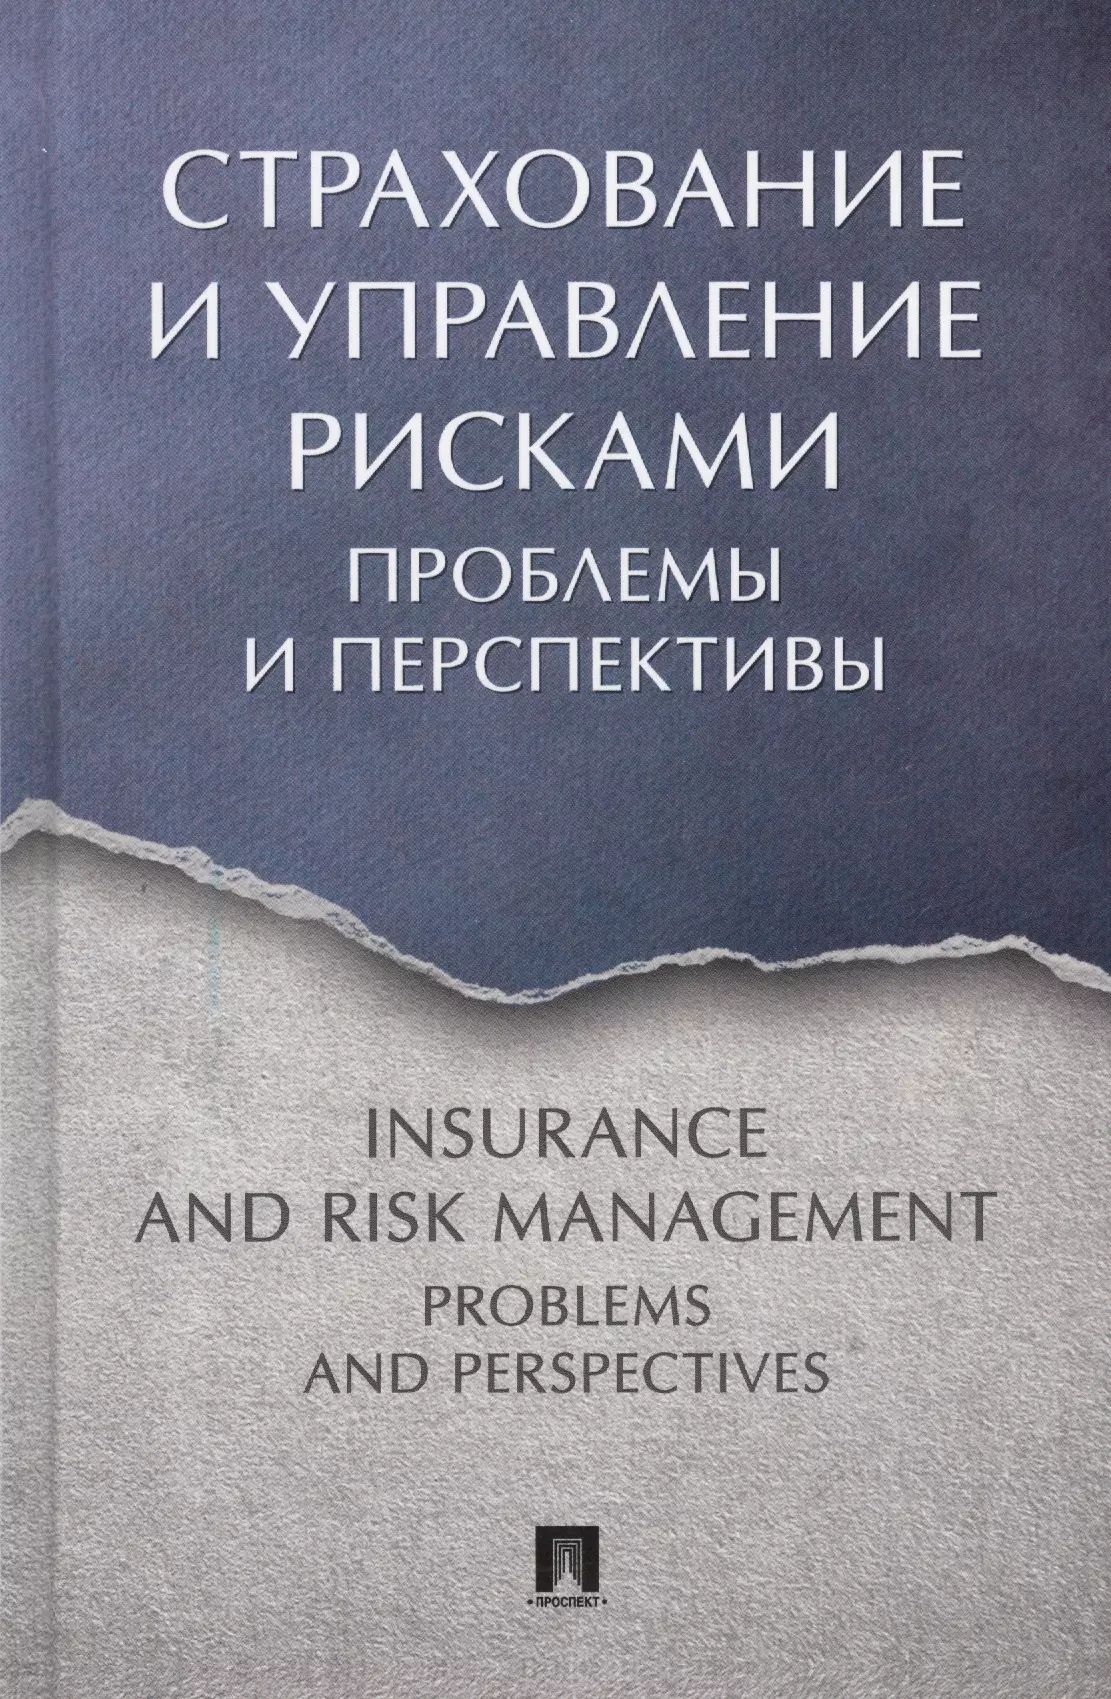 Страхование и управление рисками: проблемы и перспективы. Монография когденко в управление финансами и рисками монография